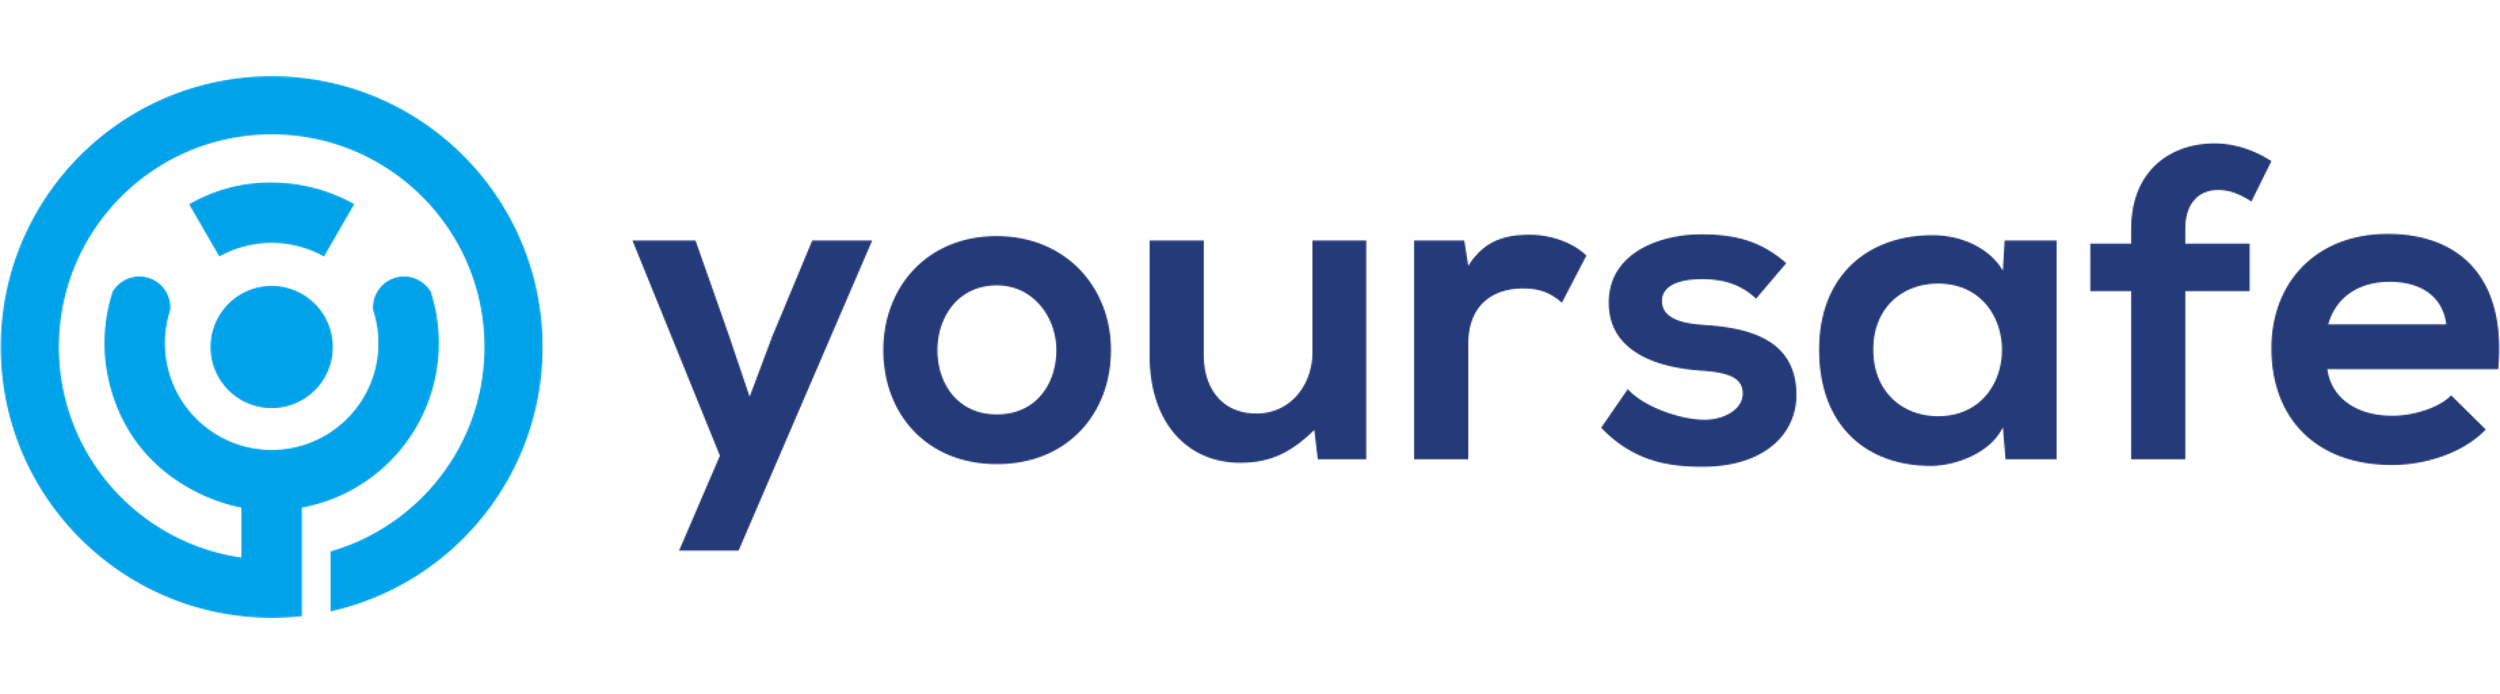 Logo yoursafe company